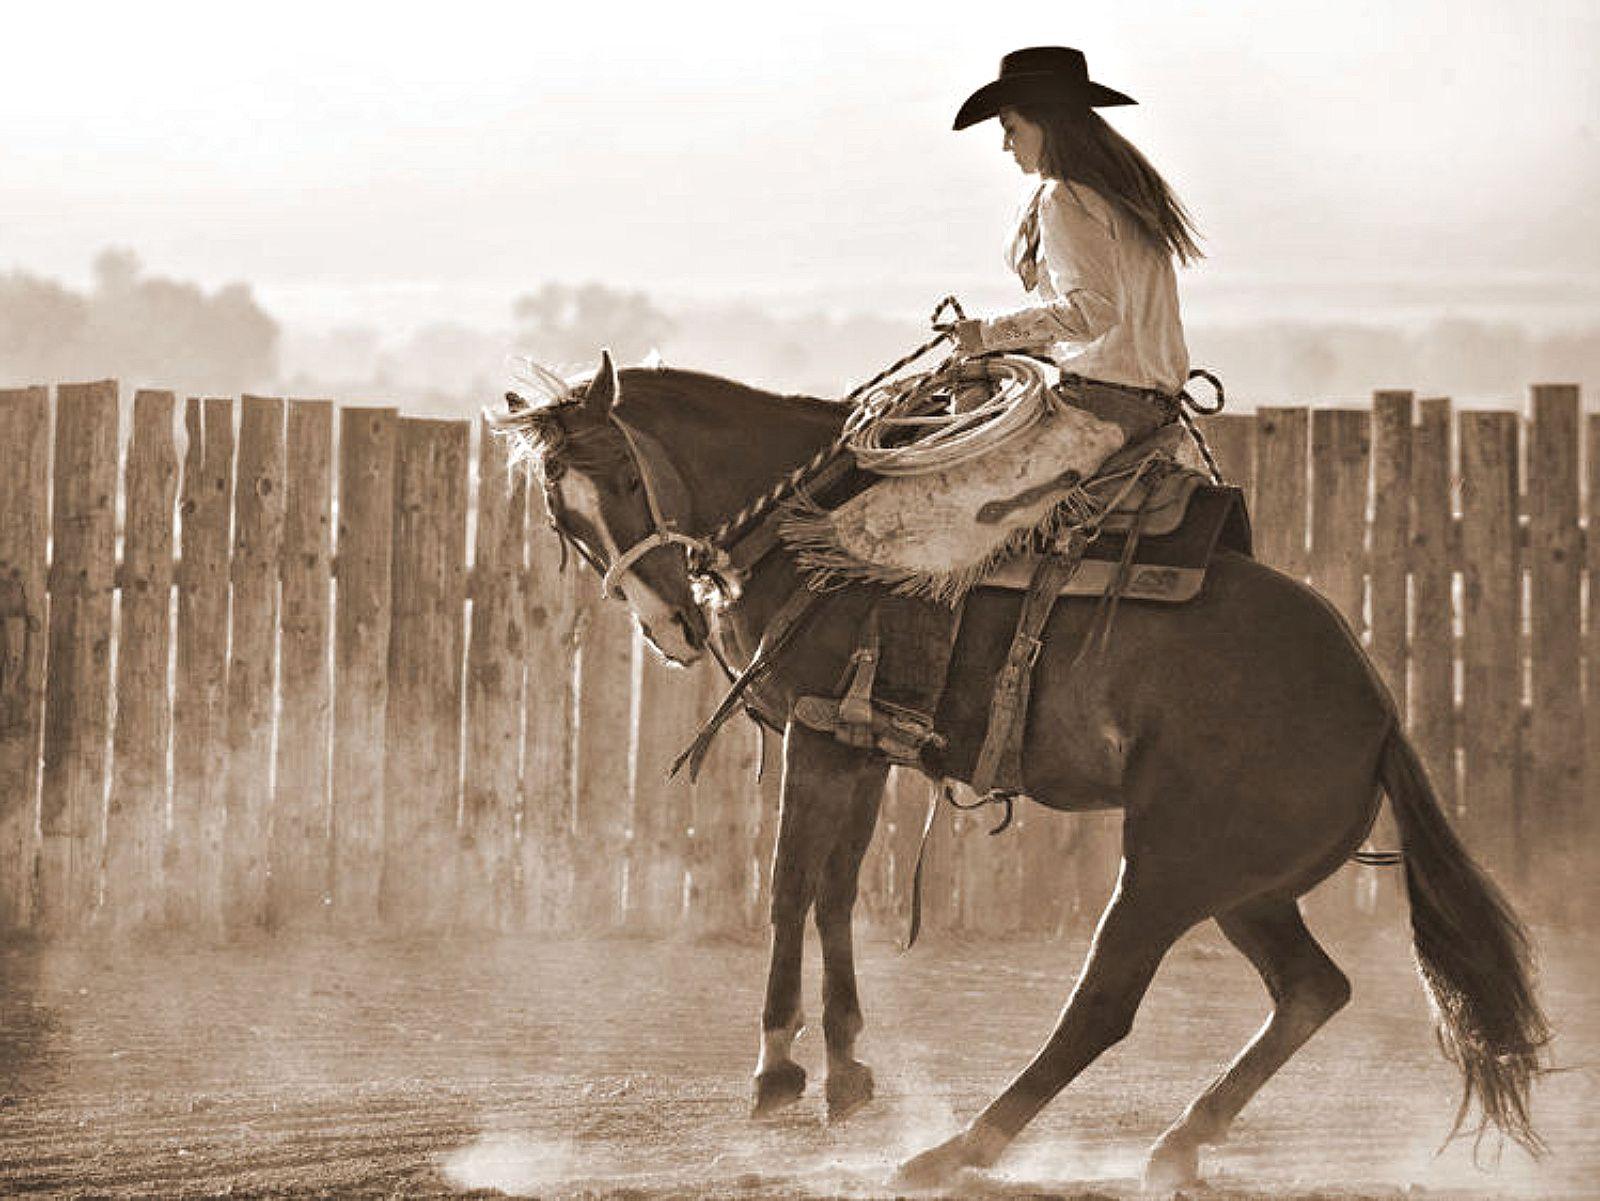 Ride'em Cowgirl wallpaper.com. Equestrian / Horses